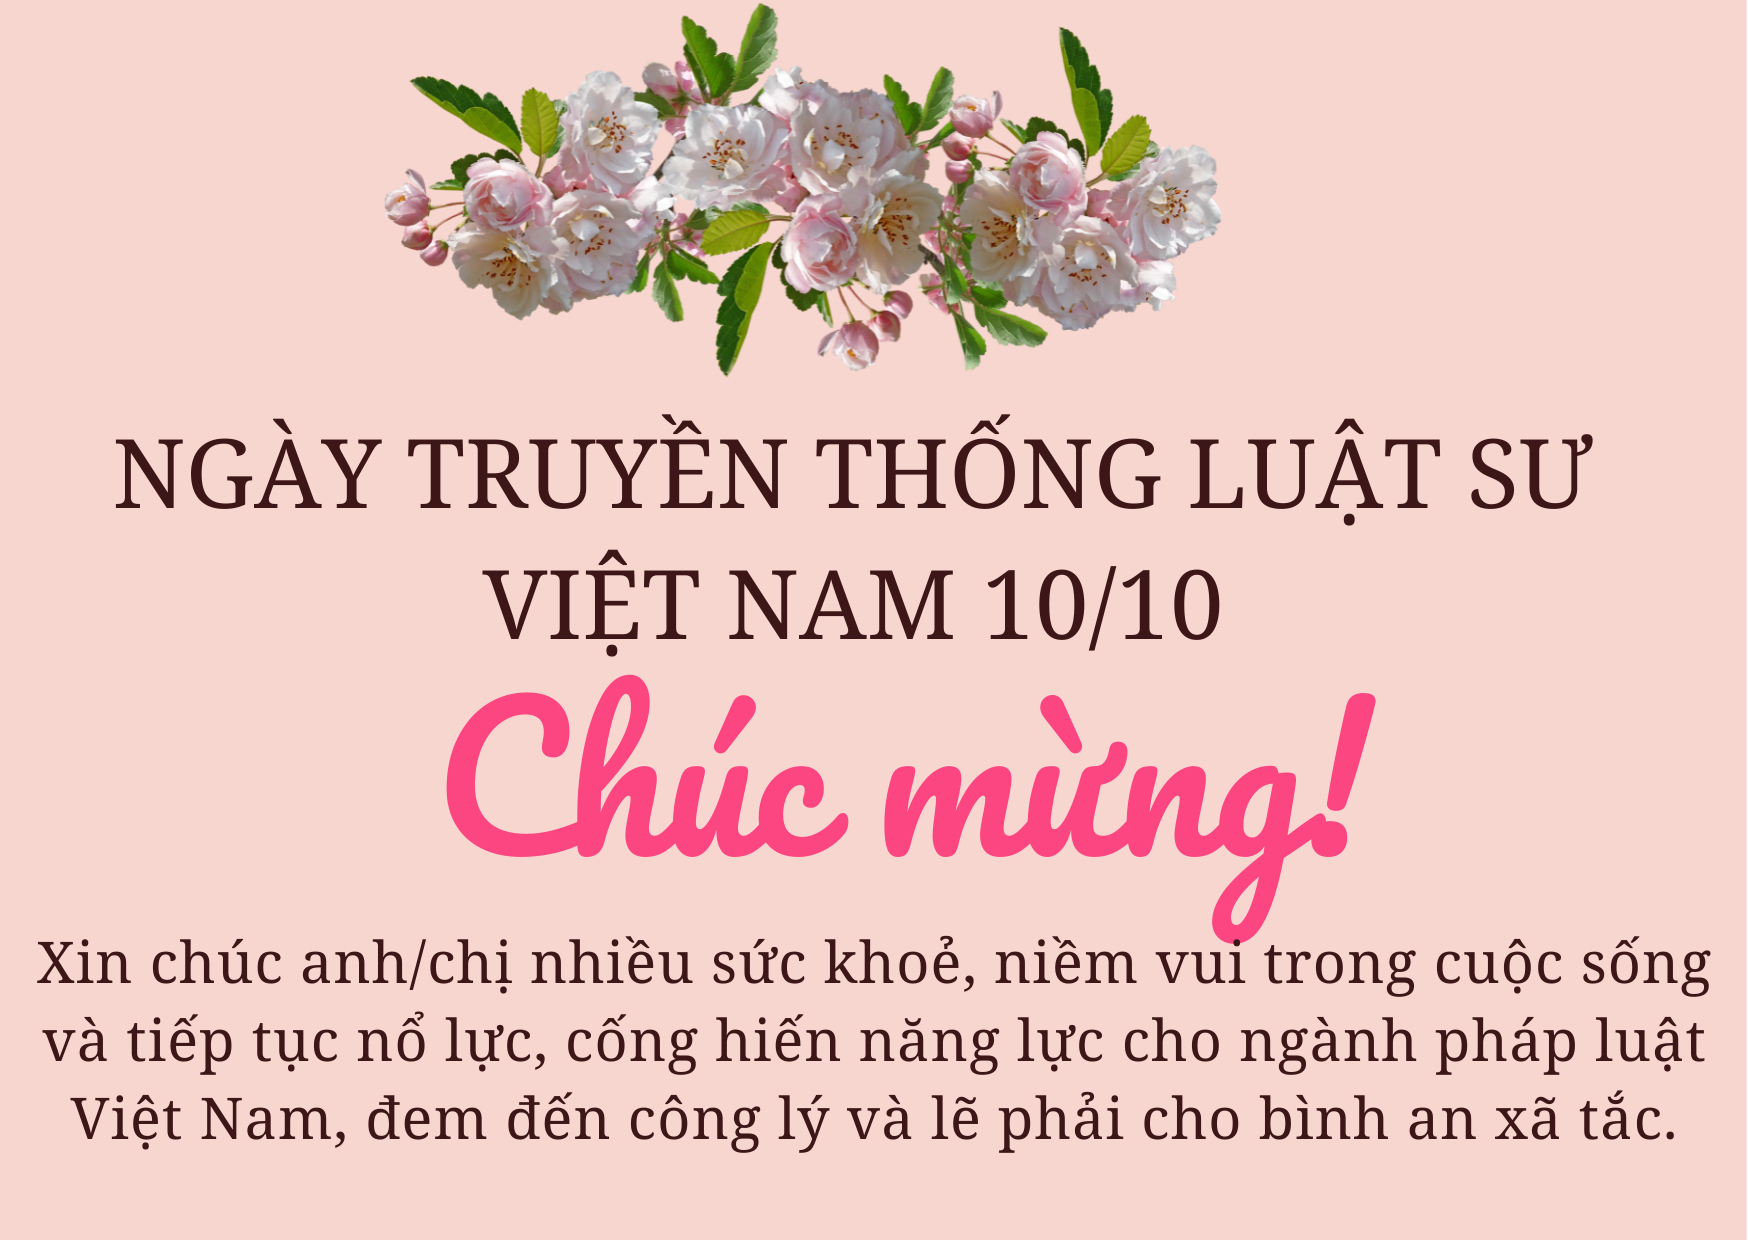 Ngày truyền thống luật sư Việt Nam là ngày quan trọng để tôn vinh những người làm công việc pháp lý. Hãy cùng xem hình ảnh liên quan đến ngày kỷ niệm này nhé!